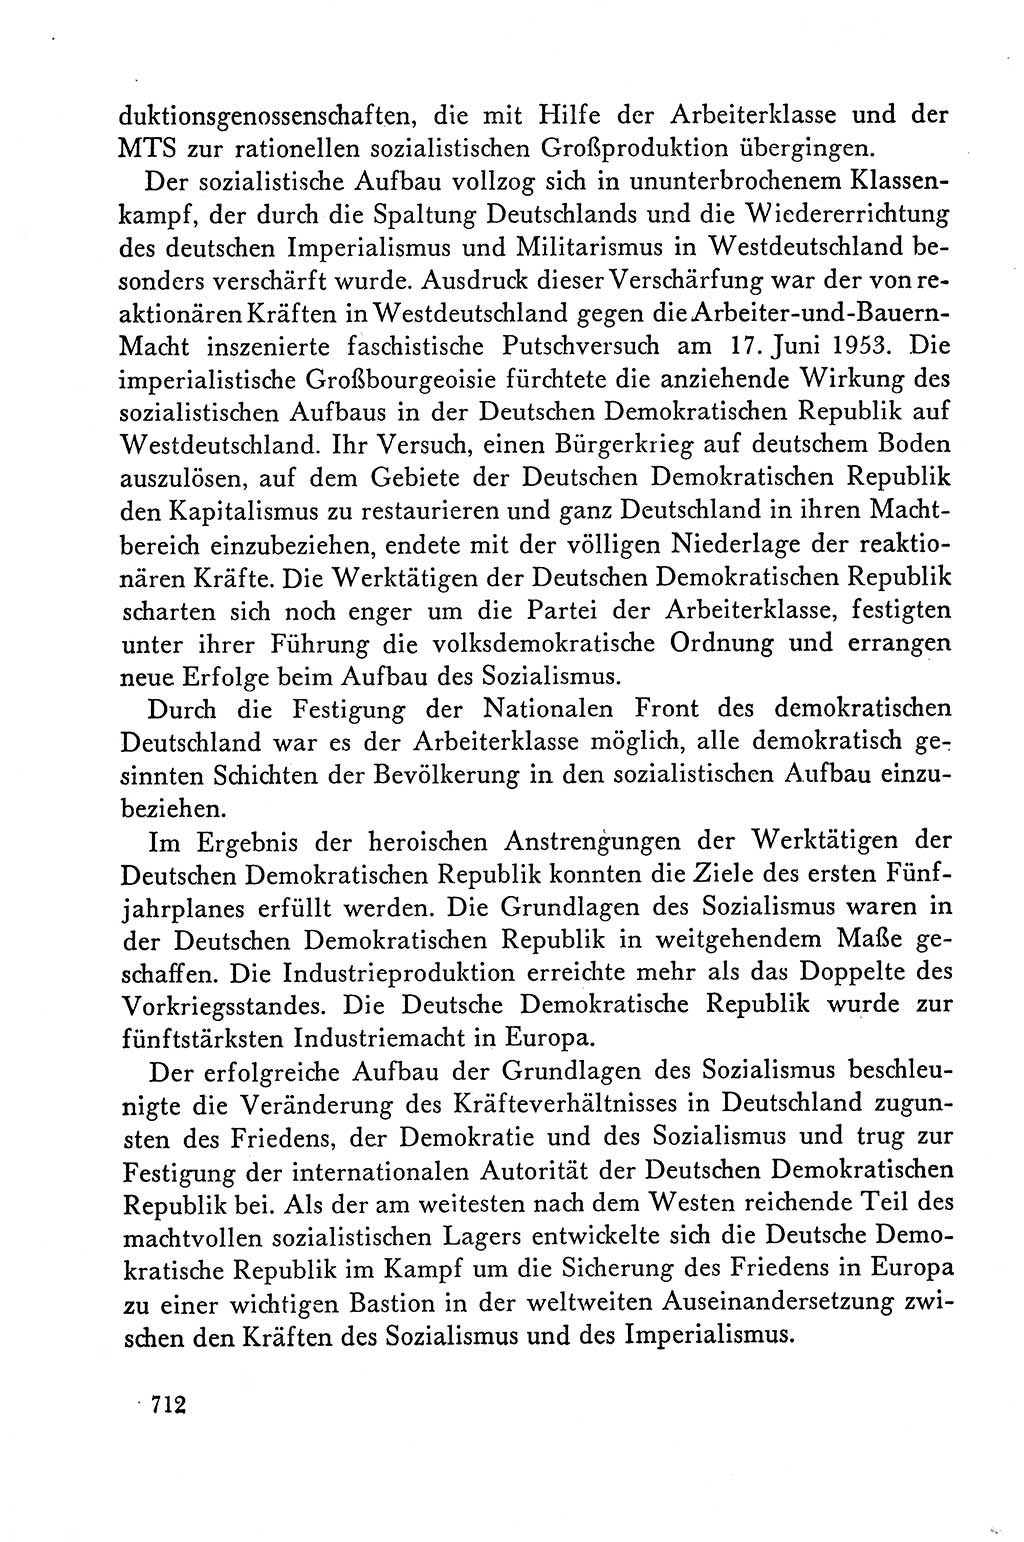 Dokumente der Sozialistischen Einheitspartei Deutschlands (SED) [Deutsche Demokratische Republik (DDR)] 1958-1959, Seite 712 (Dok. SED DDR 1958-1959, S. 712)